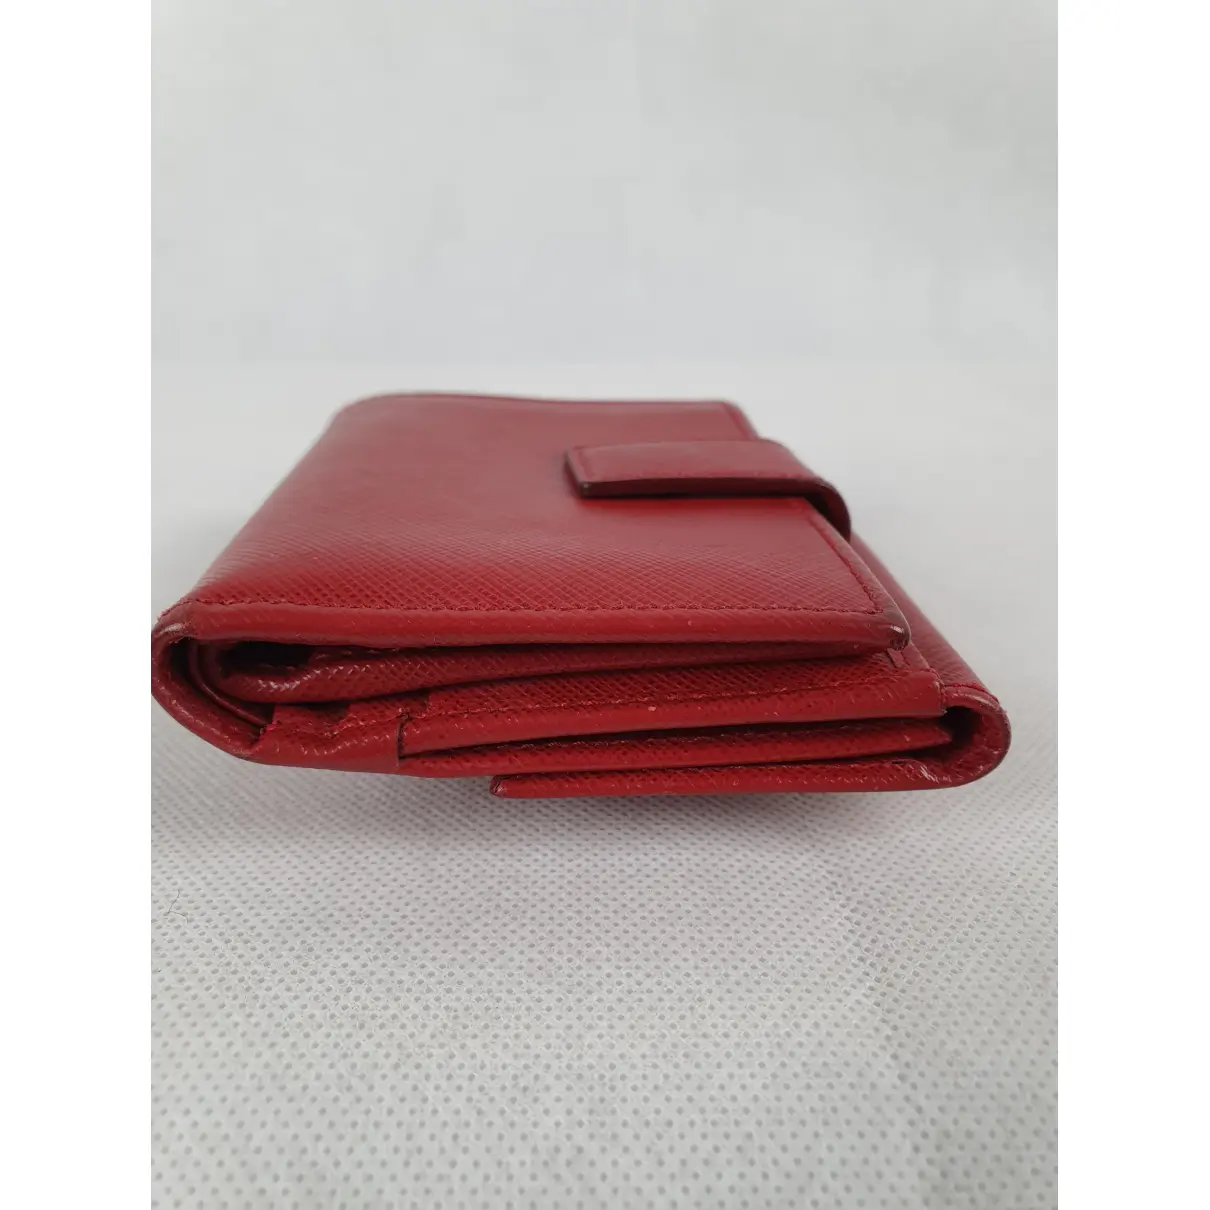 Buy Salvatore Ferragamo Leather wallet online